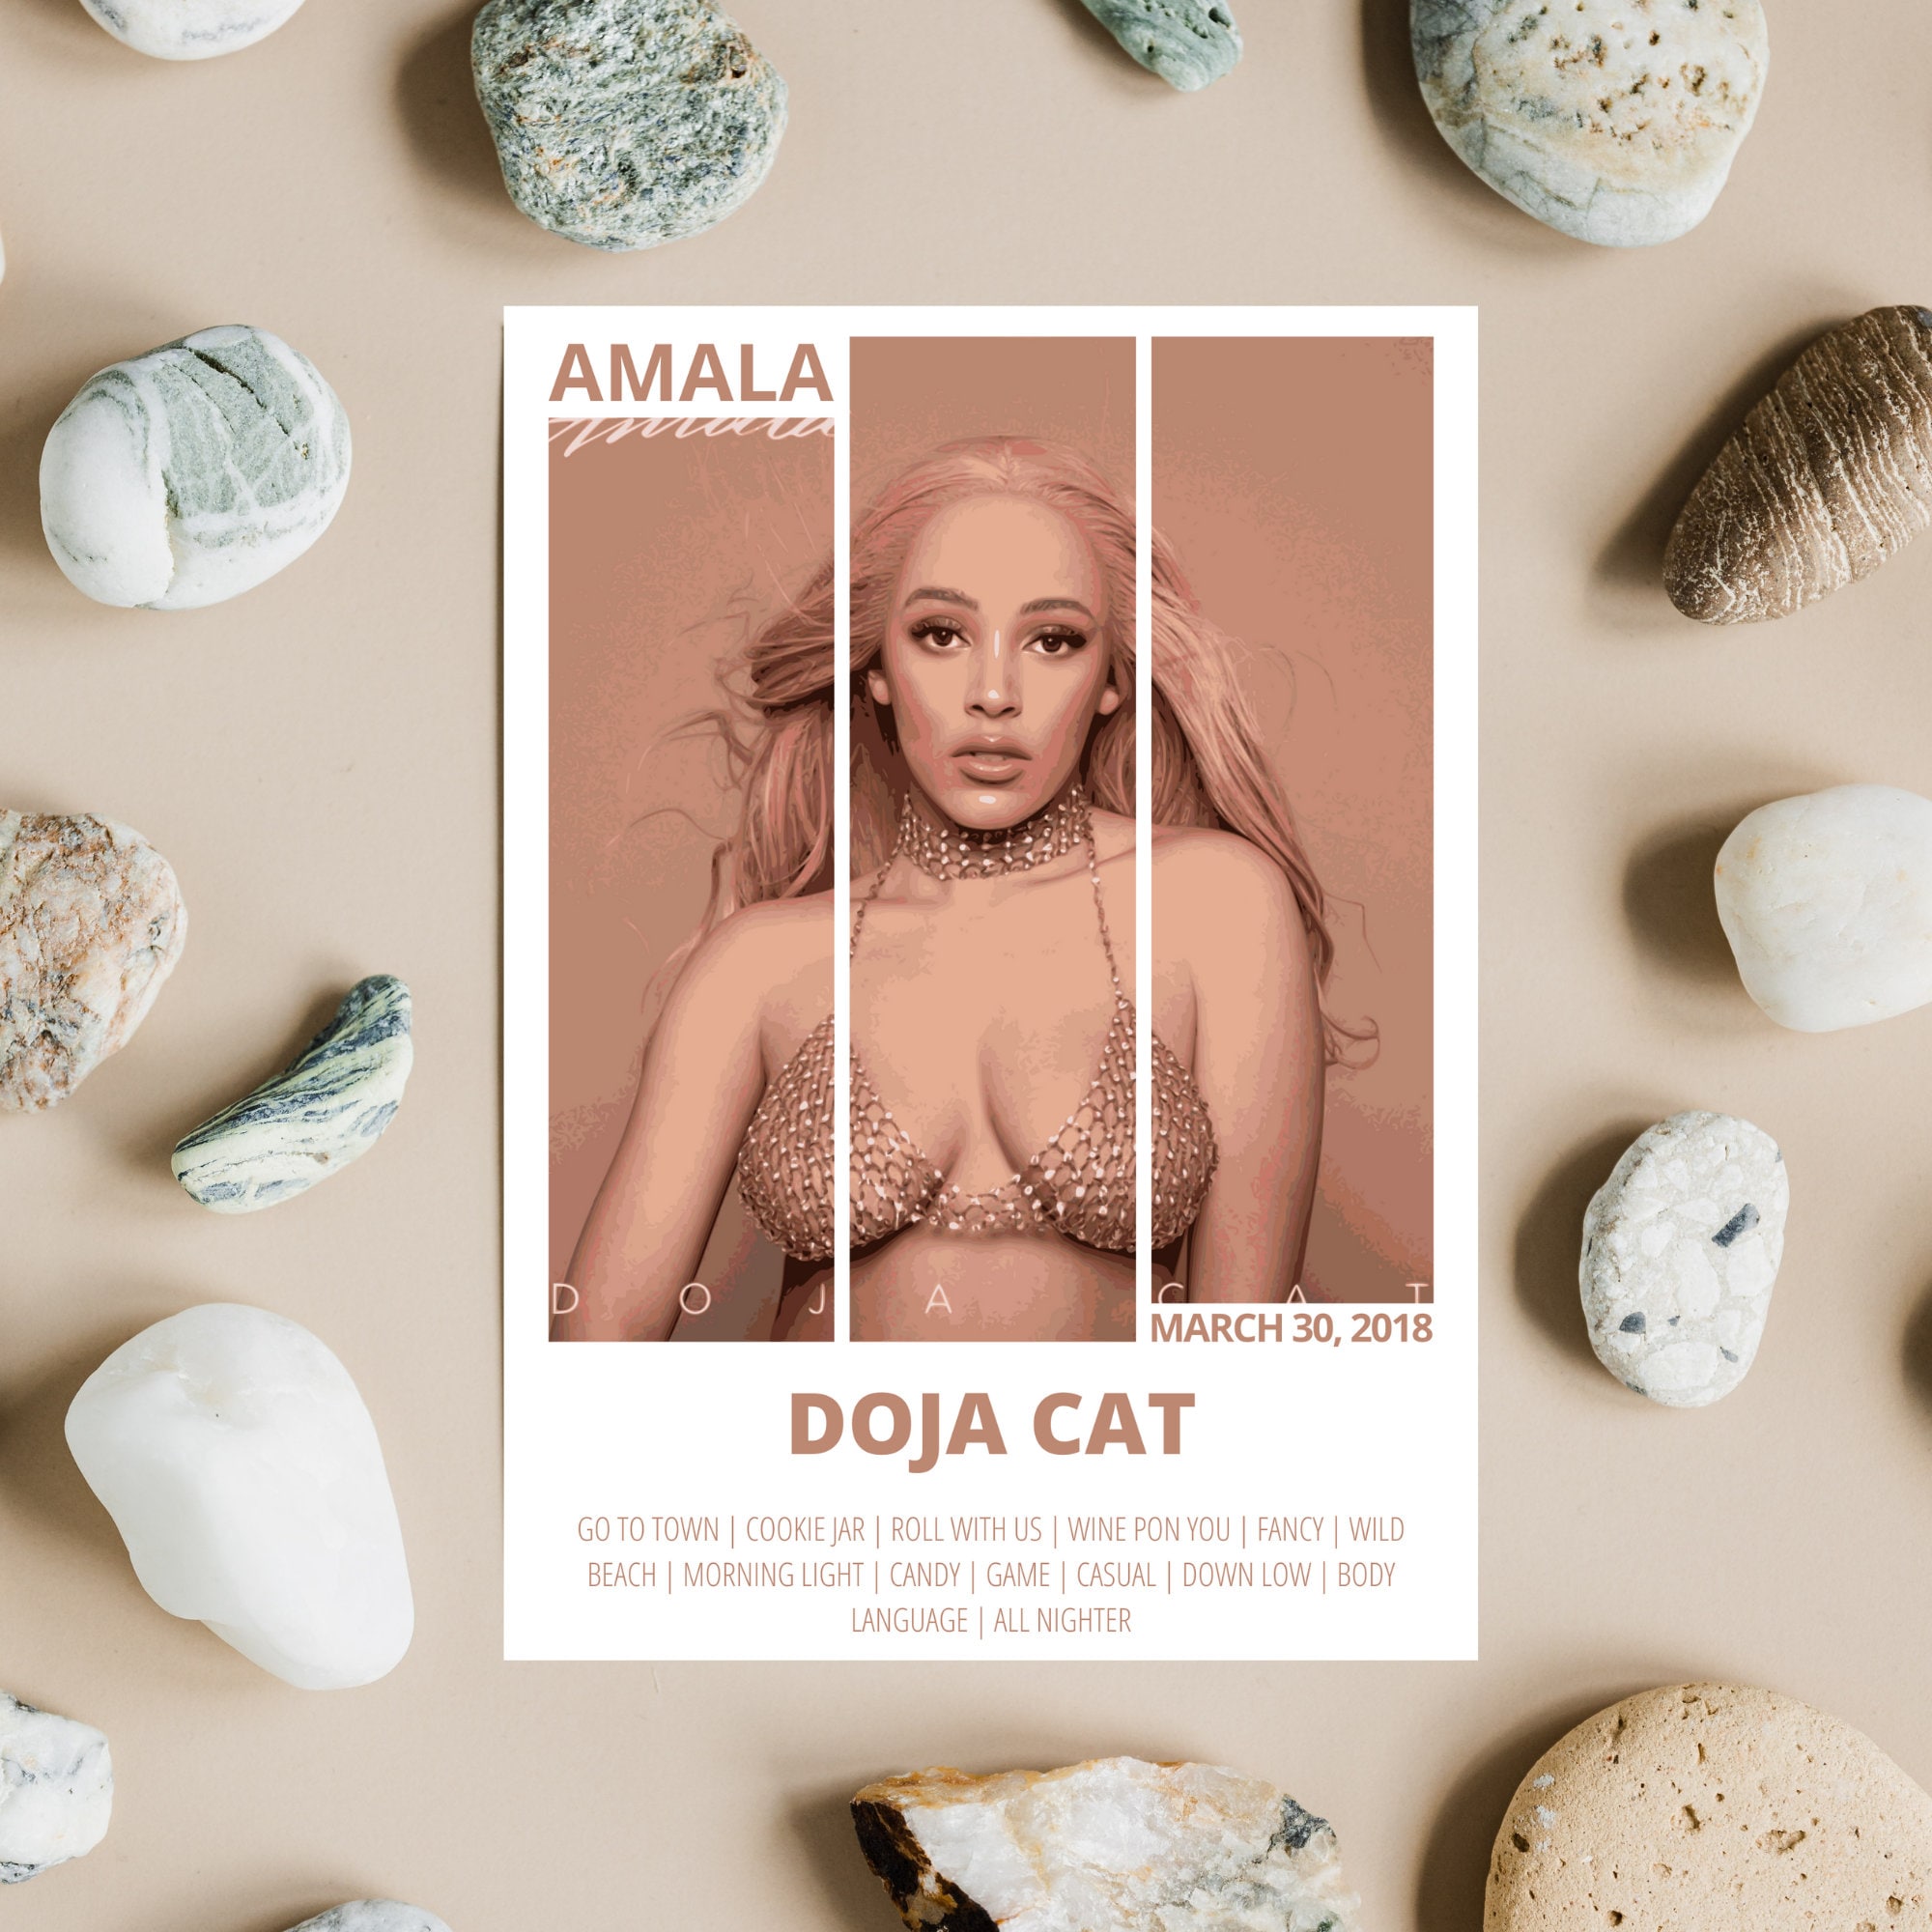 Scarlet Album Cover - Doja Cat | Poster